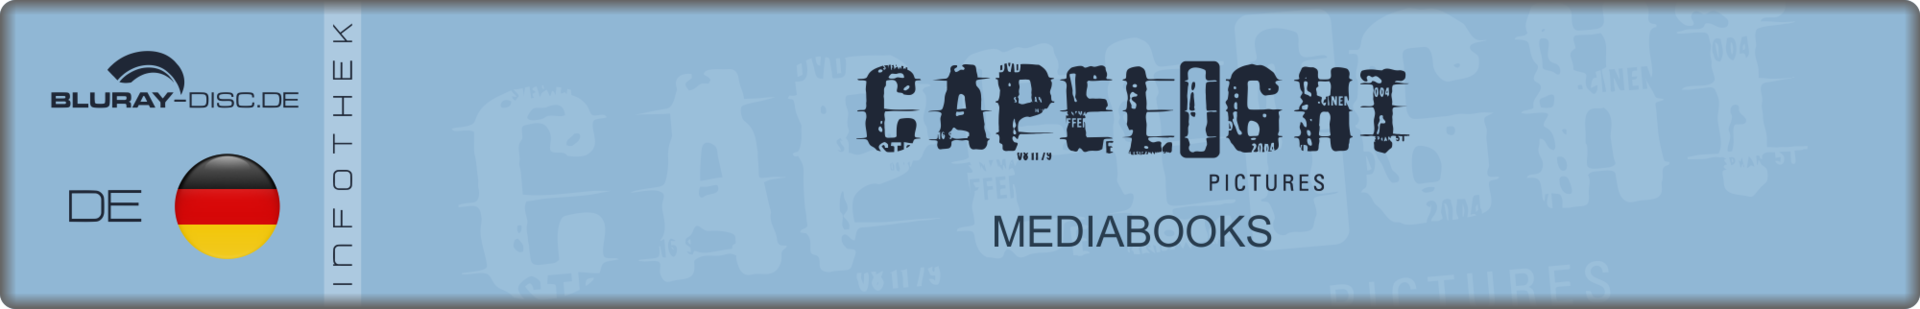 DE_Capelight_Mediabooks.png